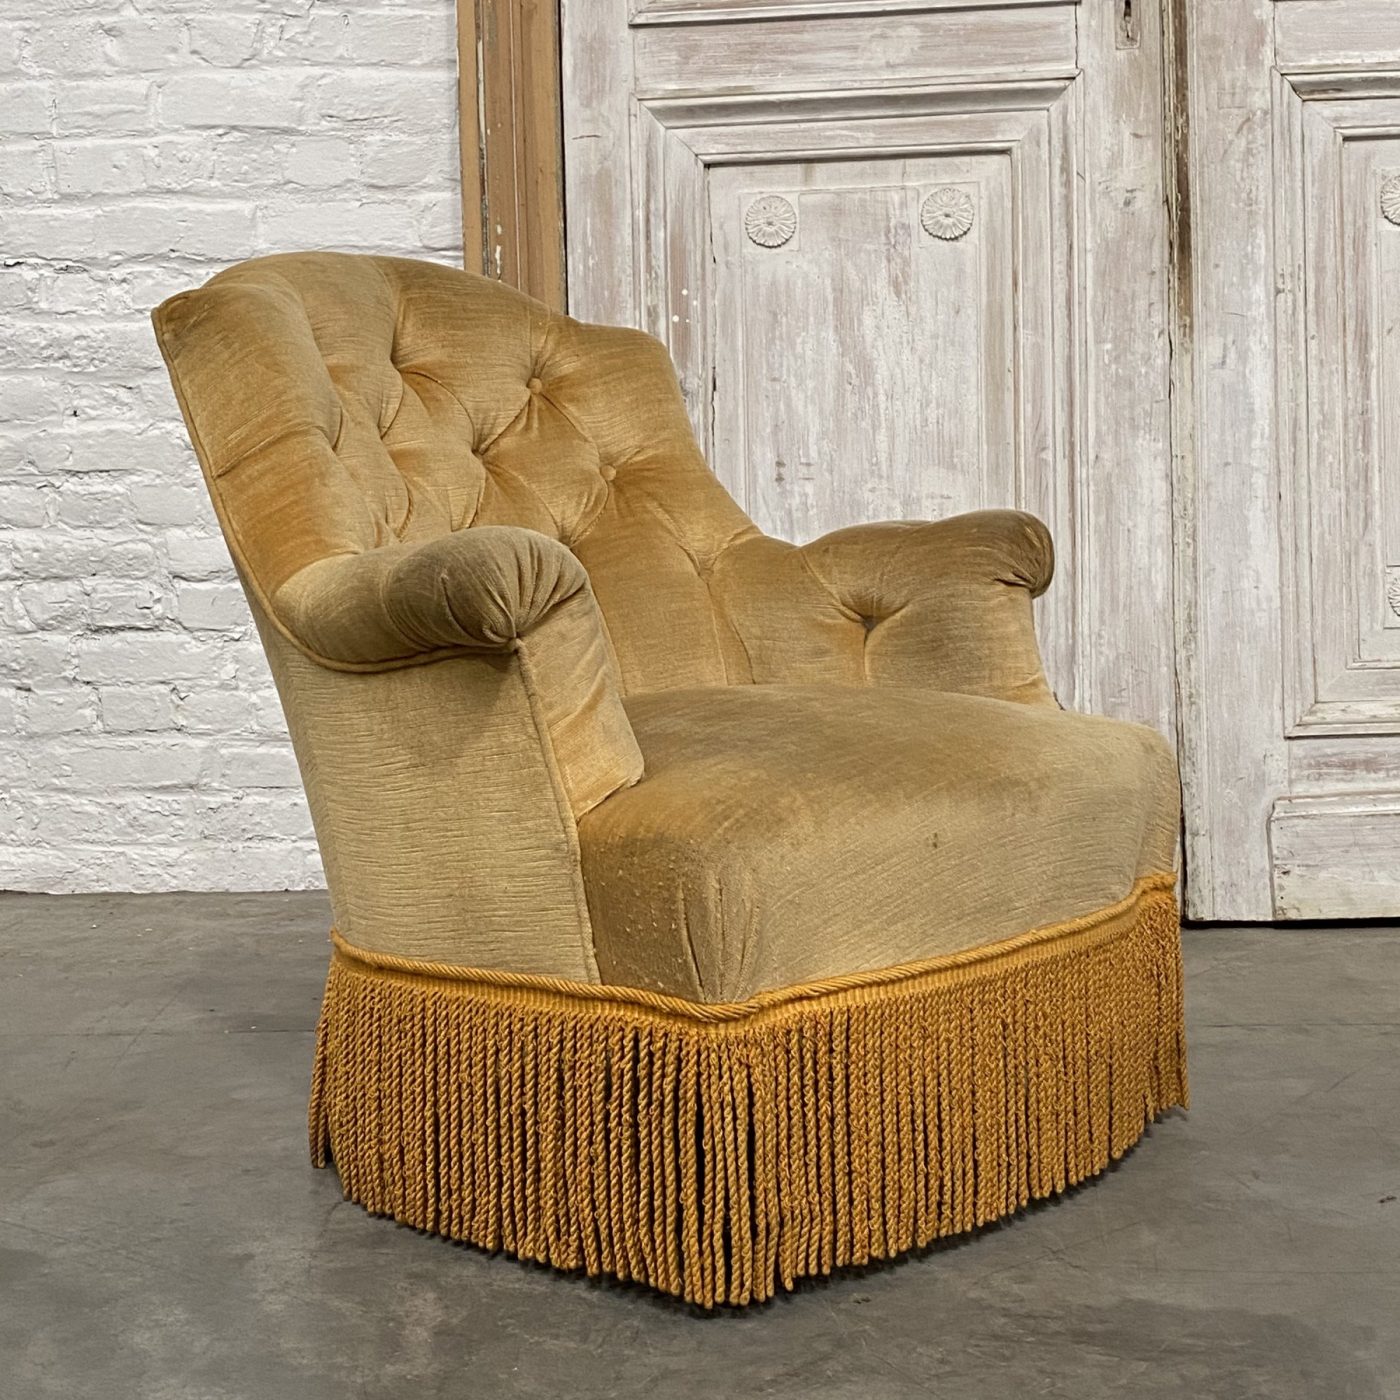 objet-vagabond-napoleon3-armchairs0000